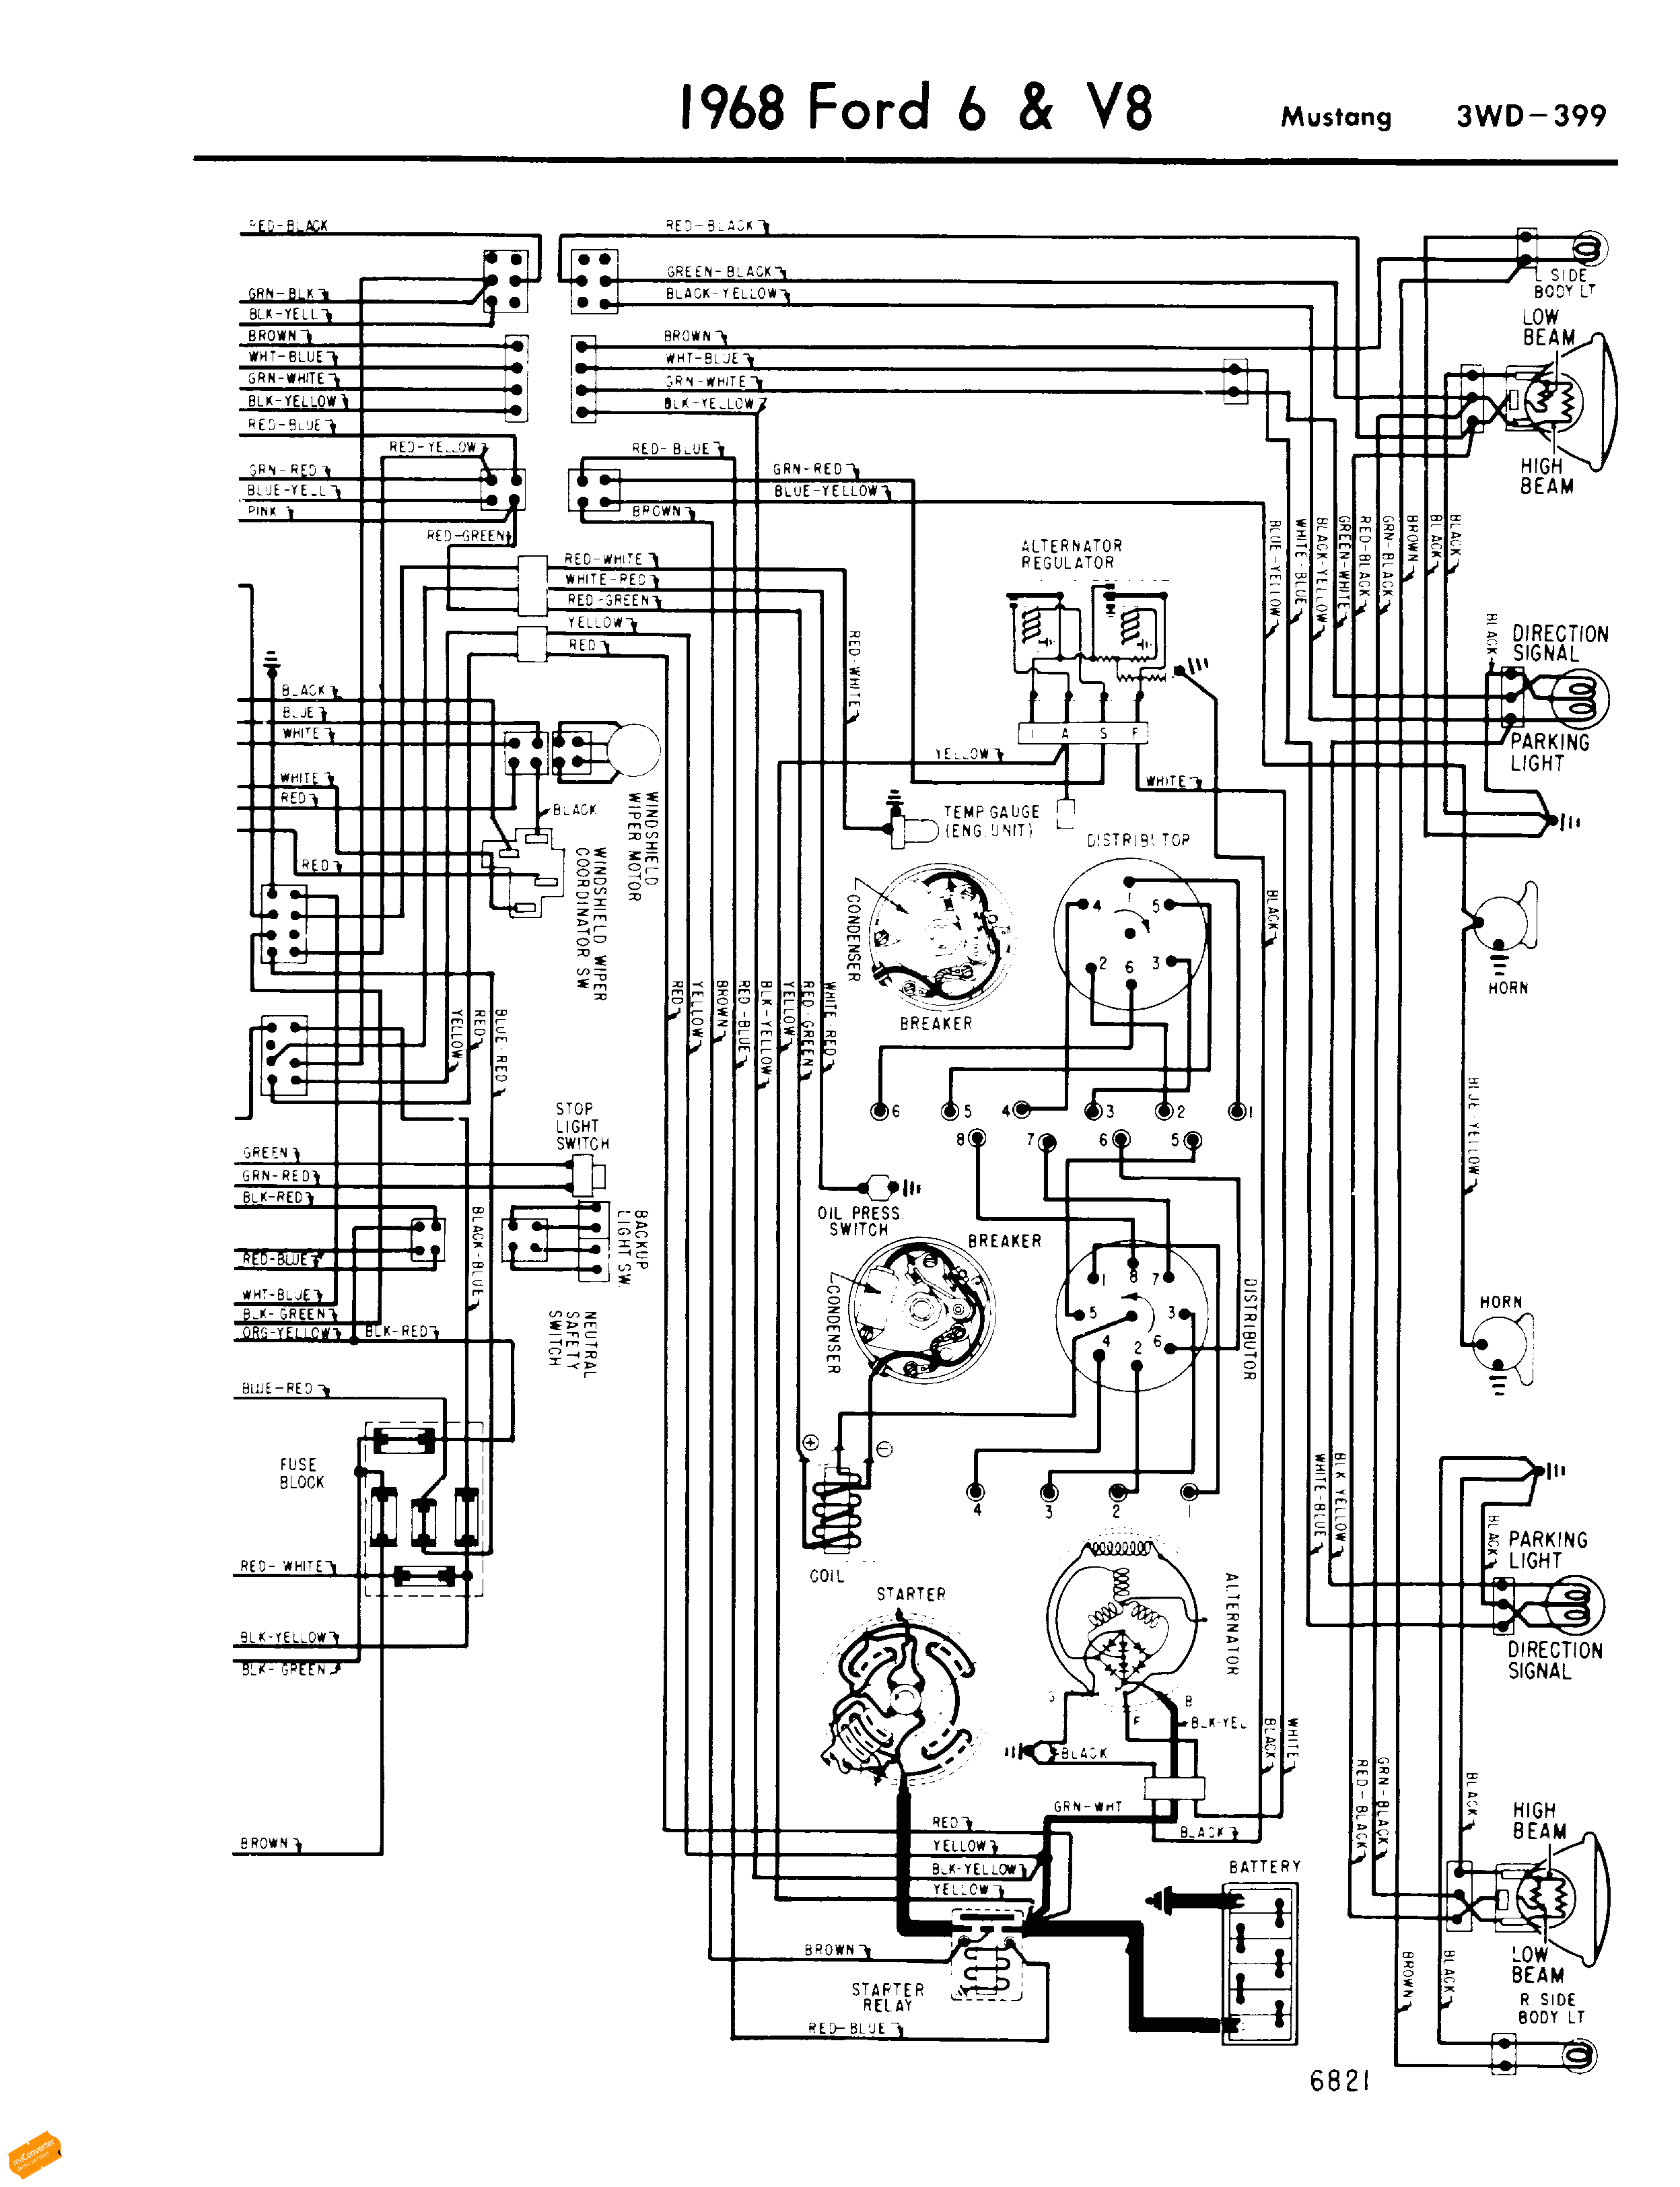 05 ford focus wiring diagram wiring diagram database 2005 mustang wiring diagram download